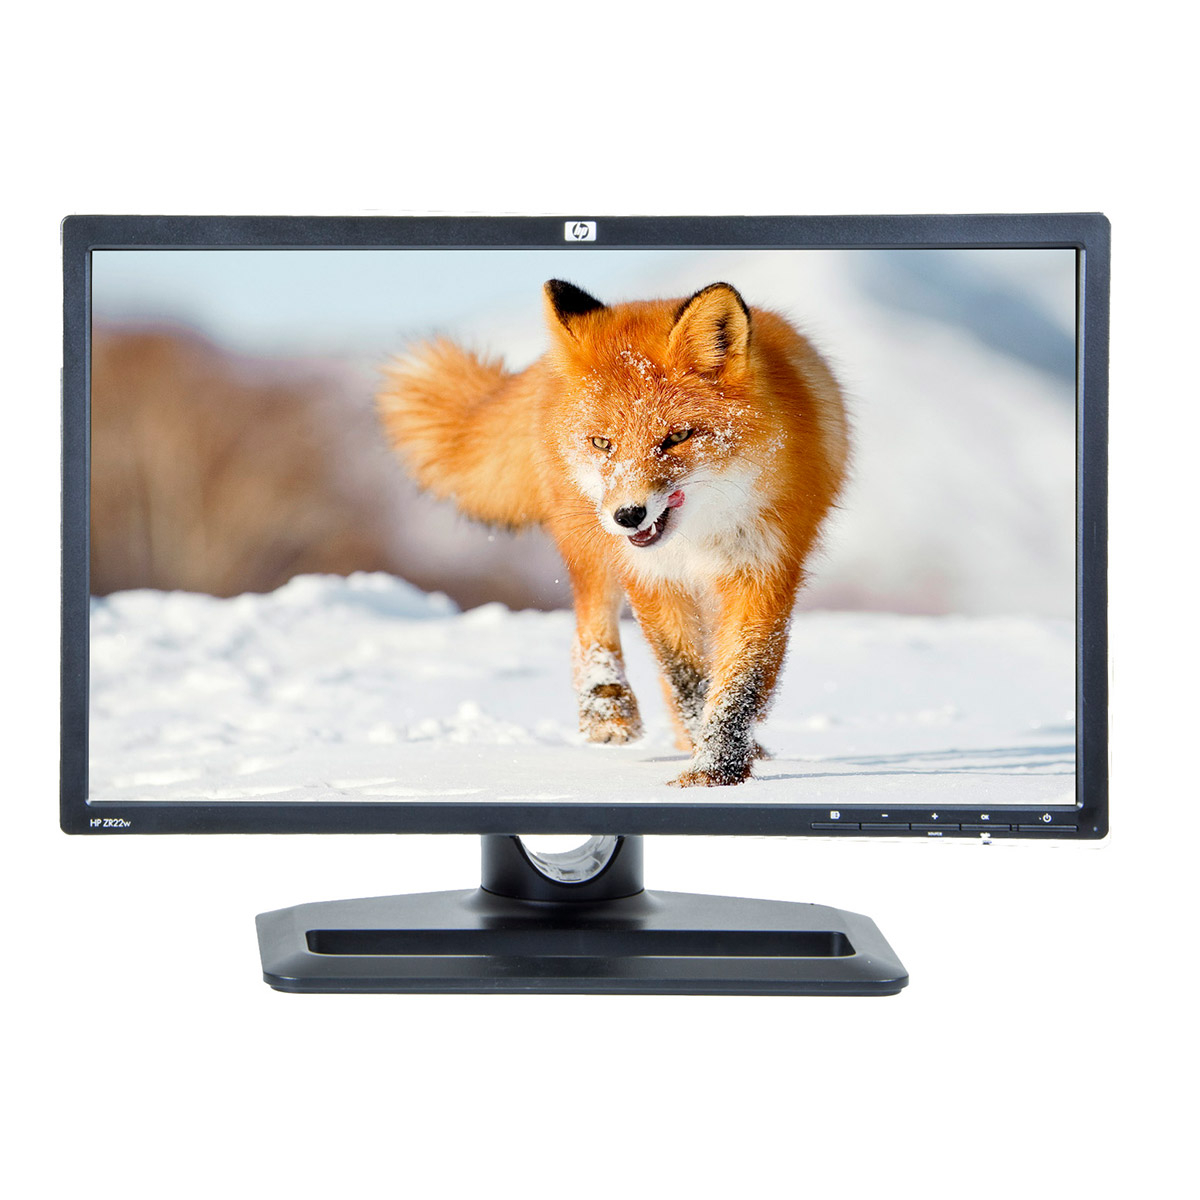 HP ZR22W  21.5 inch LCD  1920 x 1080 Full HD  16:9  displayport  negru  monitor refurbished